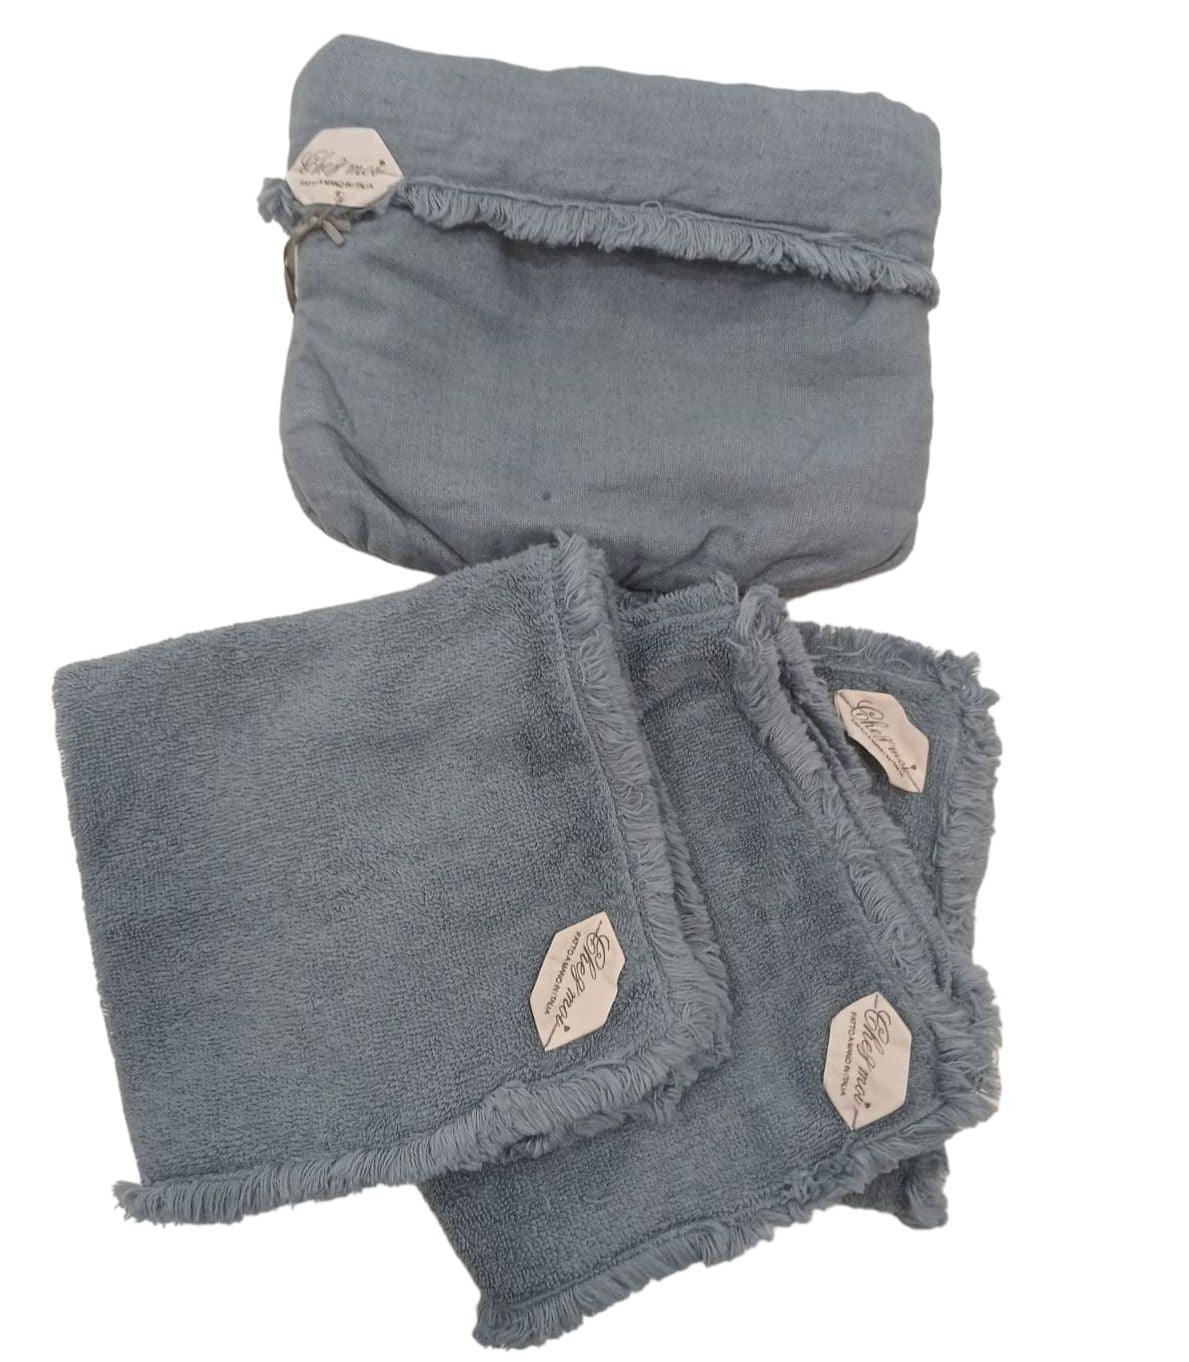 Lavette set da 3 asciugamani bagno con elegante sacchetto di lino, colore: Blu Denim, 100% Made in Italy - Chez Moi - MARIKA DE PAOLA - HOME DECOR